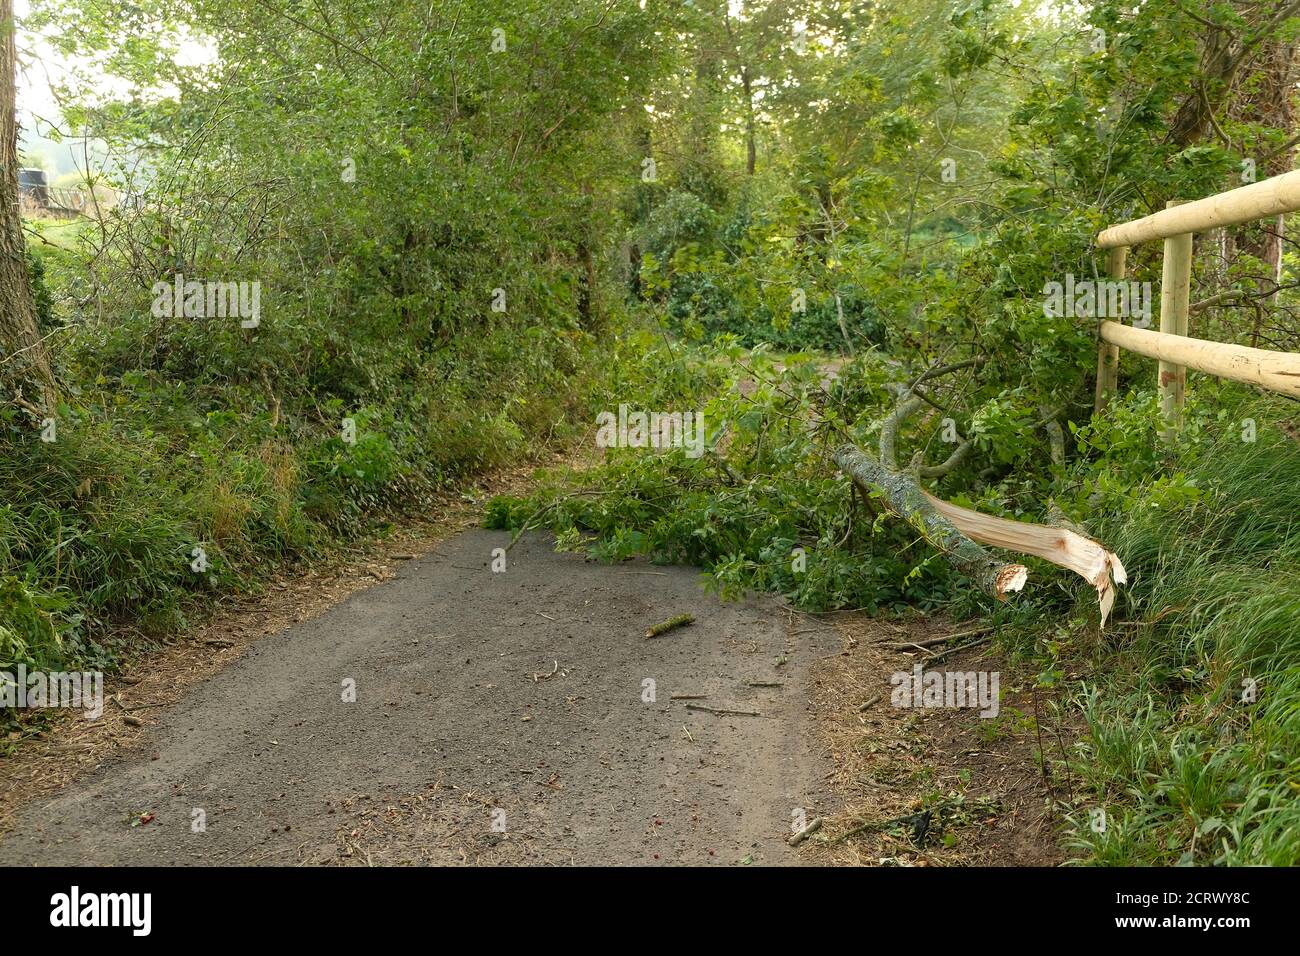 Septembre 2020 - des branches ont explosé des arbres bloquant la voie dans la campagne du Somerset, Angleterre, Royaume-Uni Banque D'Images